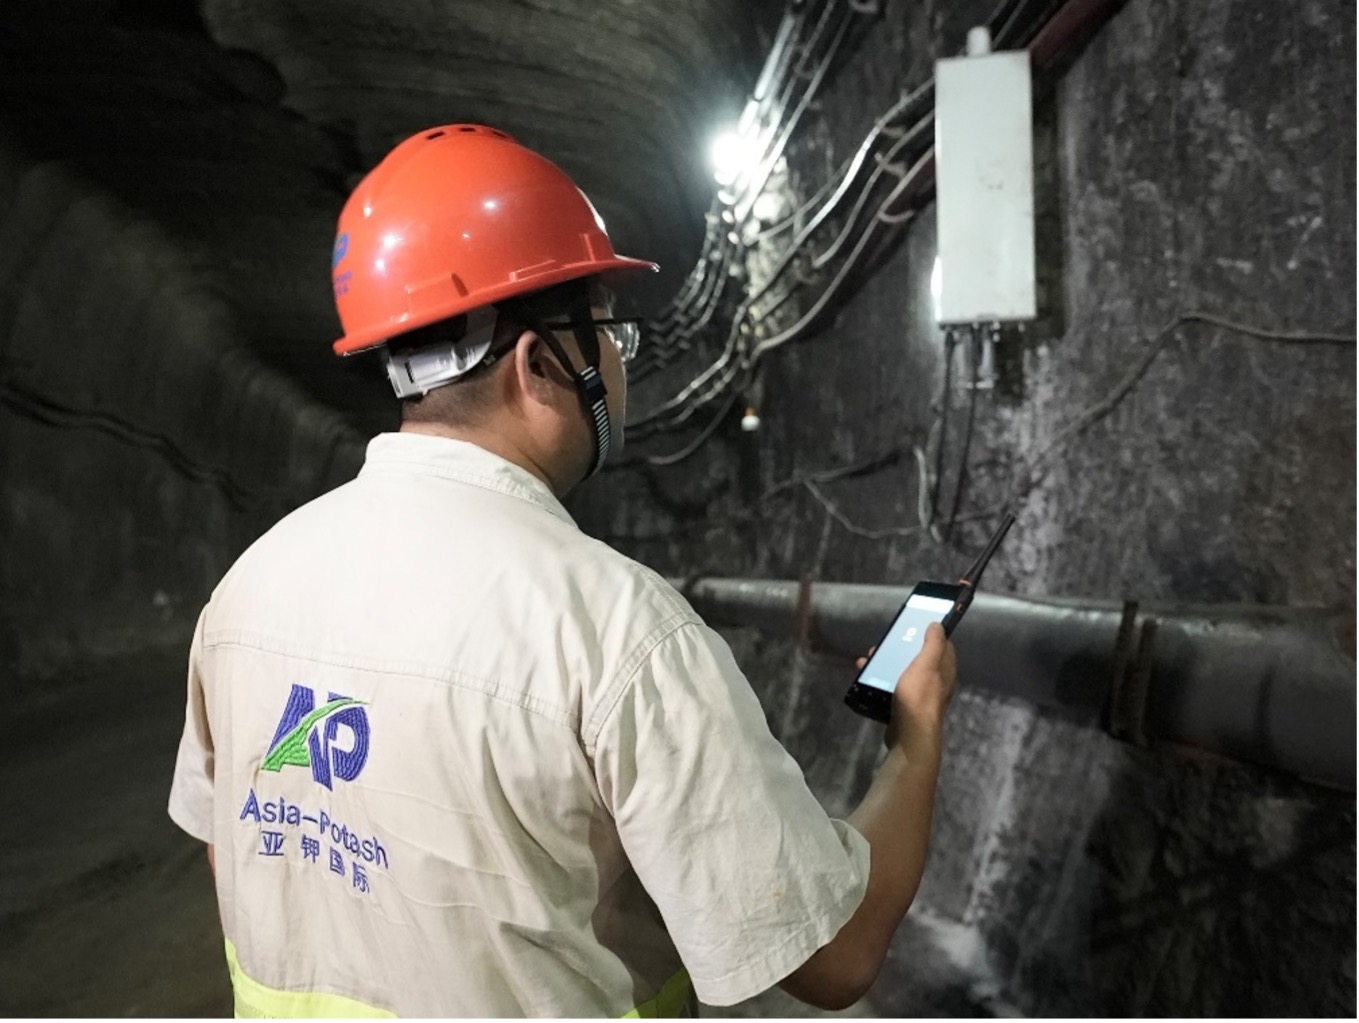 Đội ngũ Asia Potash tại mỏ khai khoáng thông minh Huawei hỗ trợ xây dựng mỏ kali thông minh đầu tiên của ASEAN tại Lào